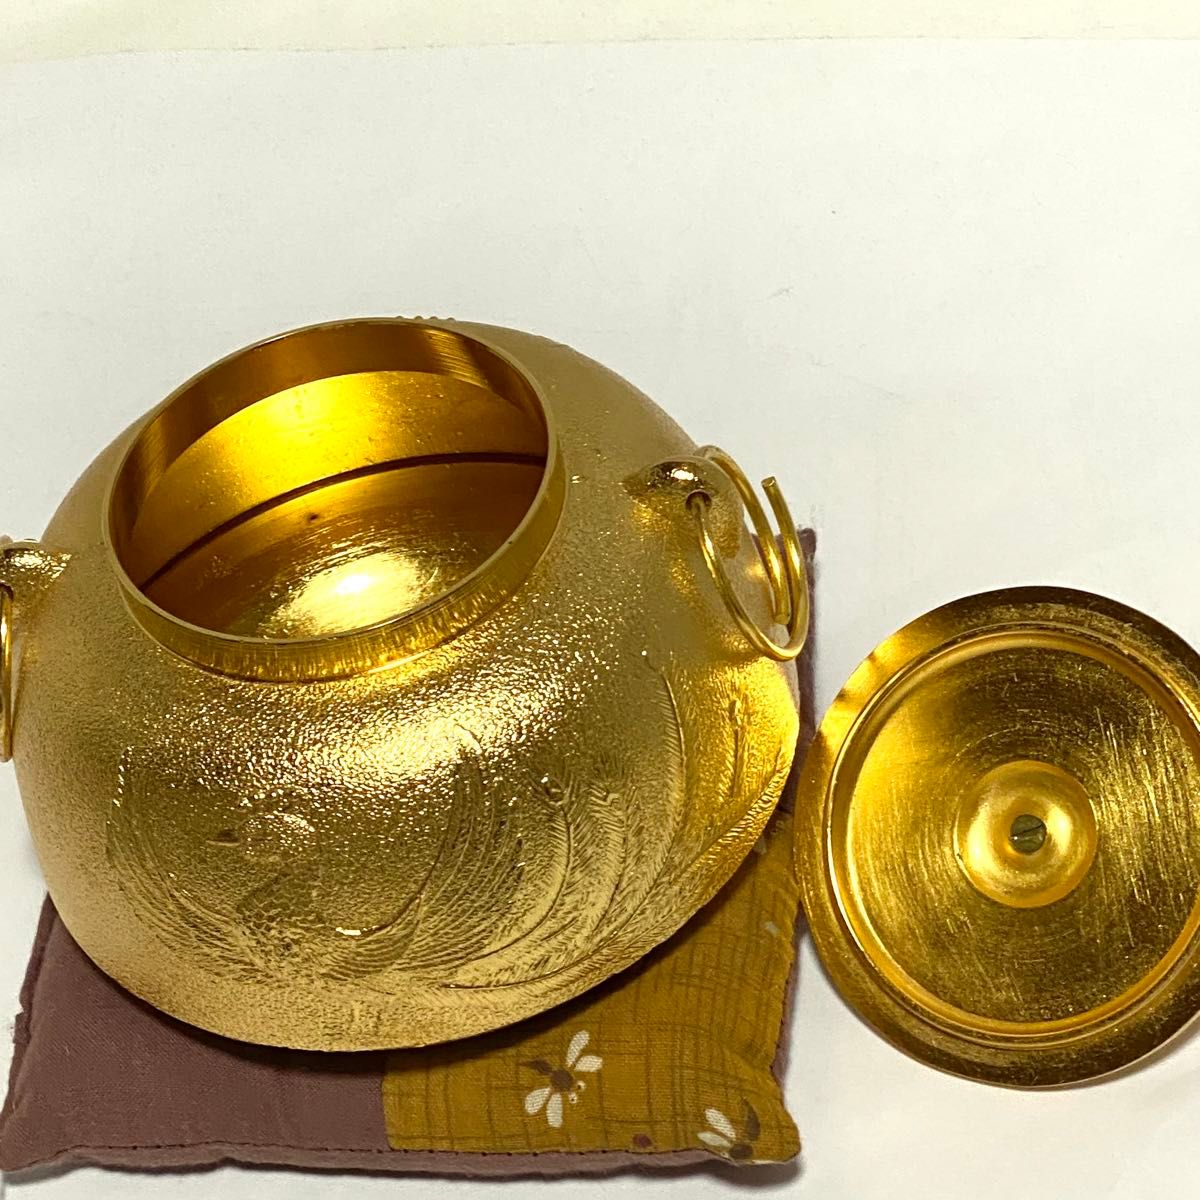 天皇陛下居 宝祚五十年奉祝 茶釜 鳳凰 24KGP ゴールド 金 茶道具